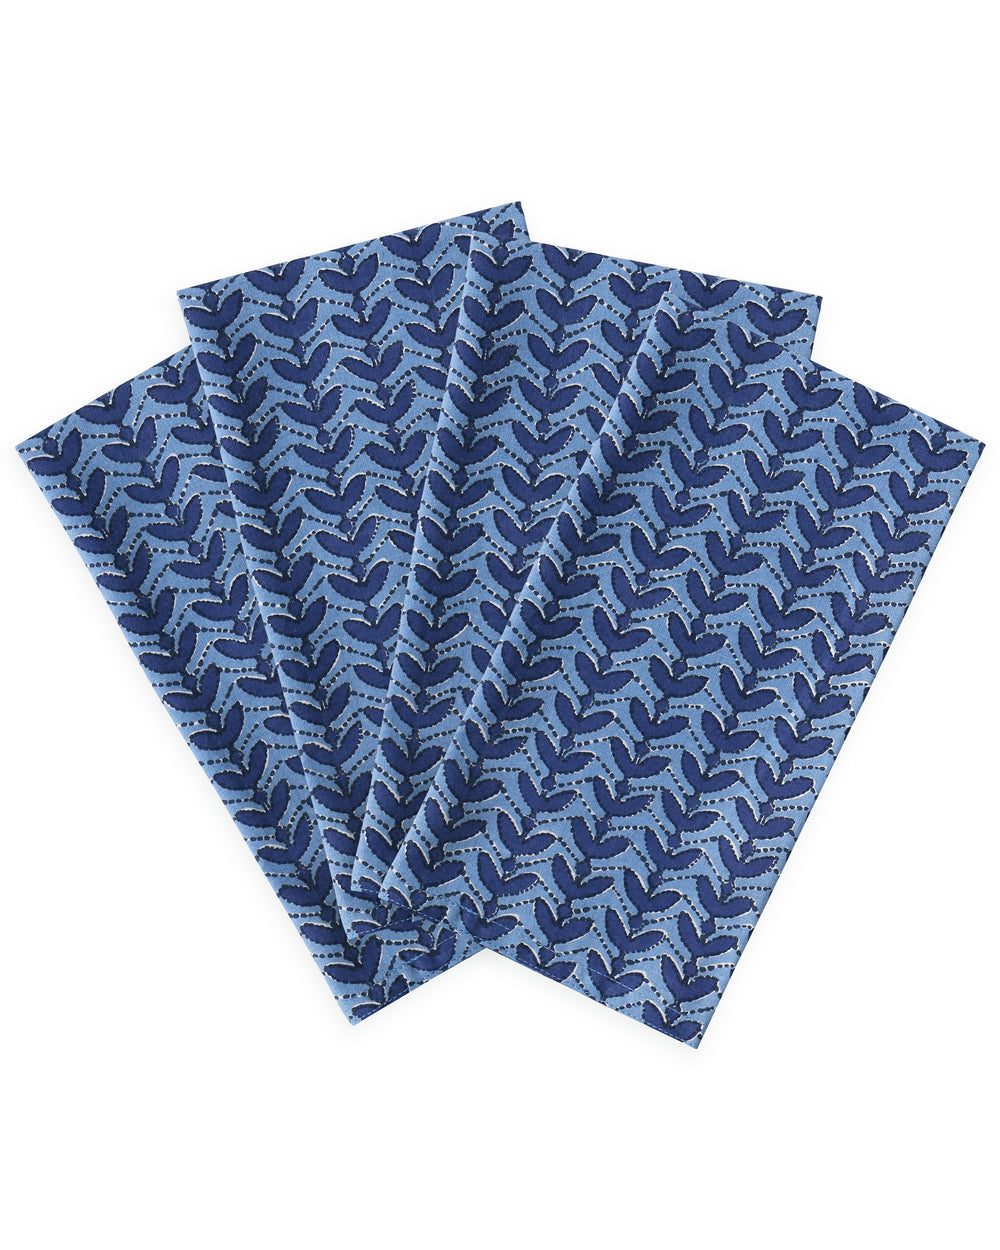 Aswan Azure cotton napkins (set of 4)